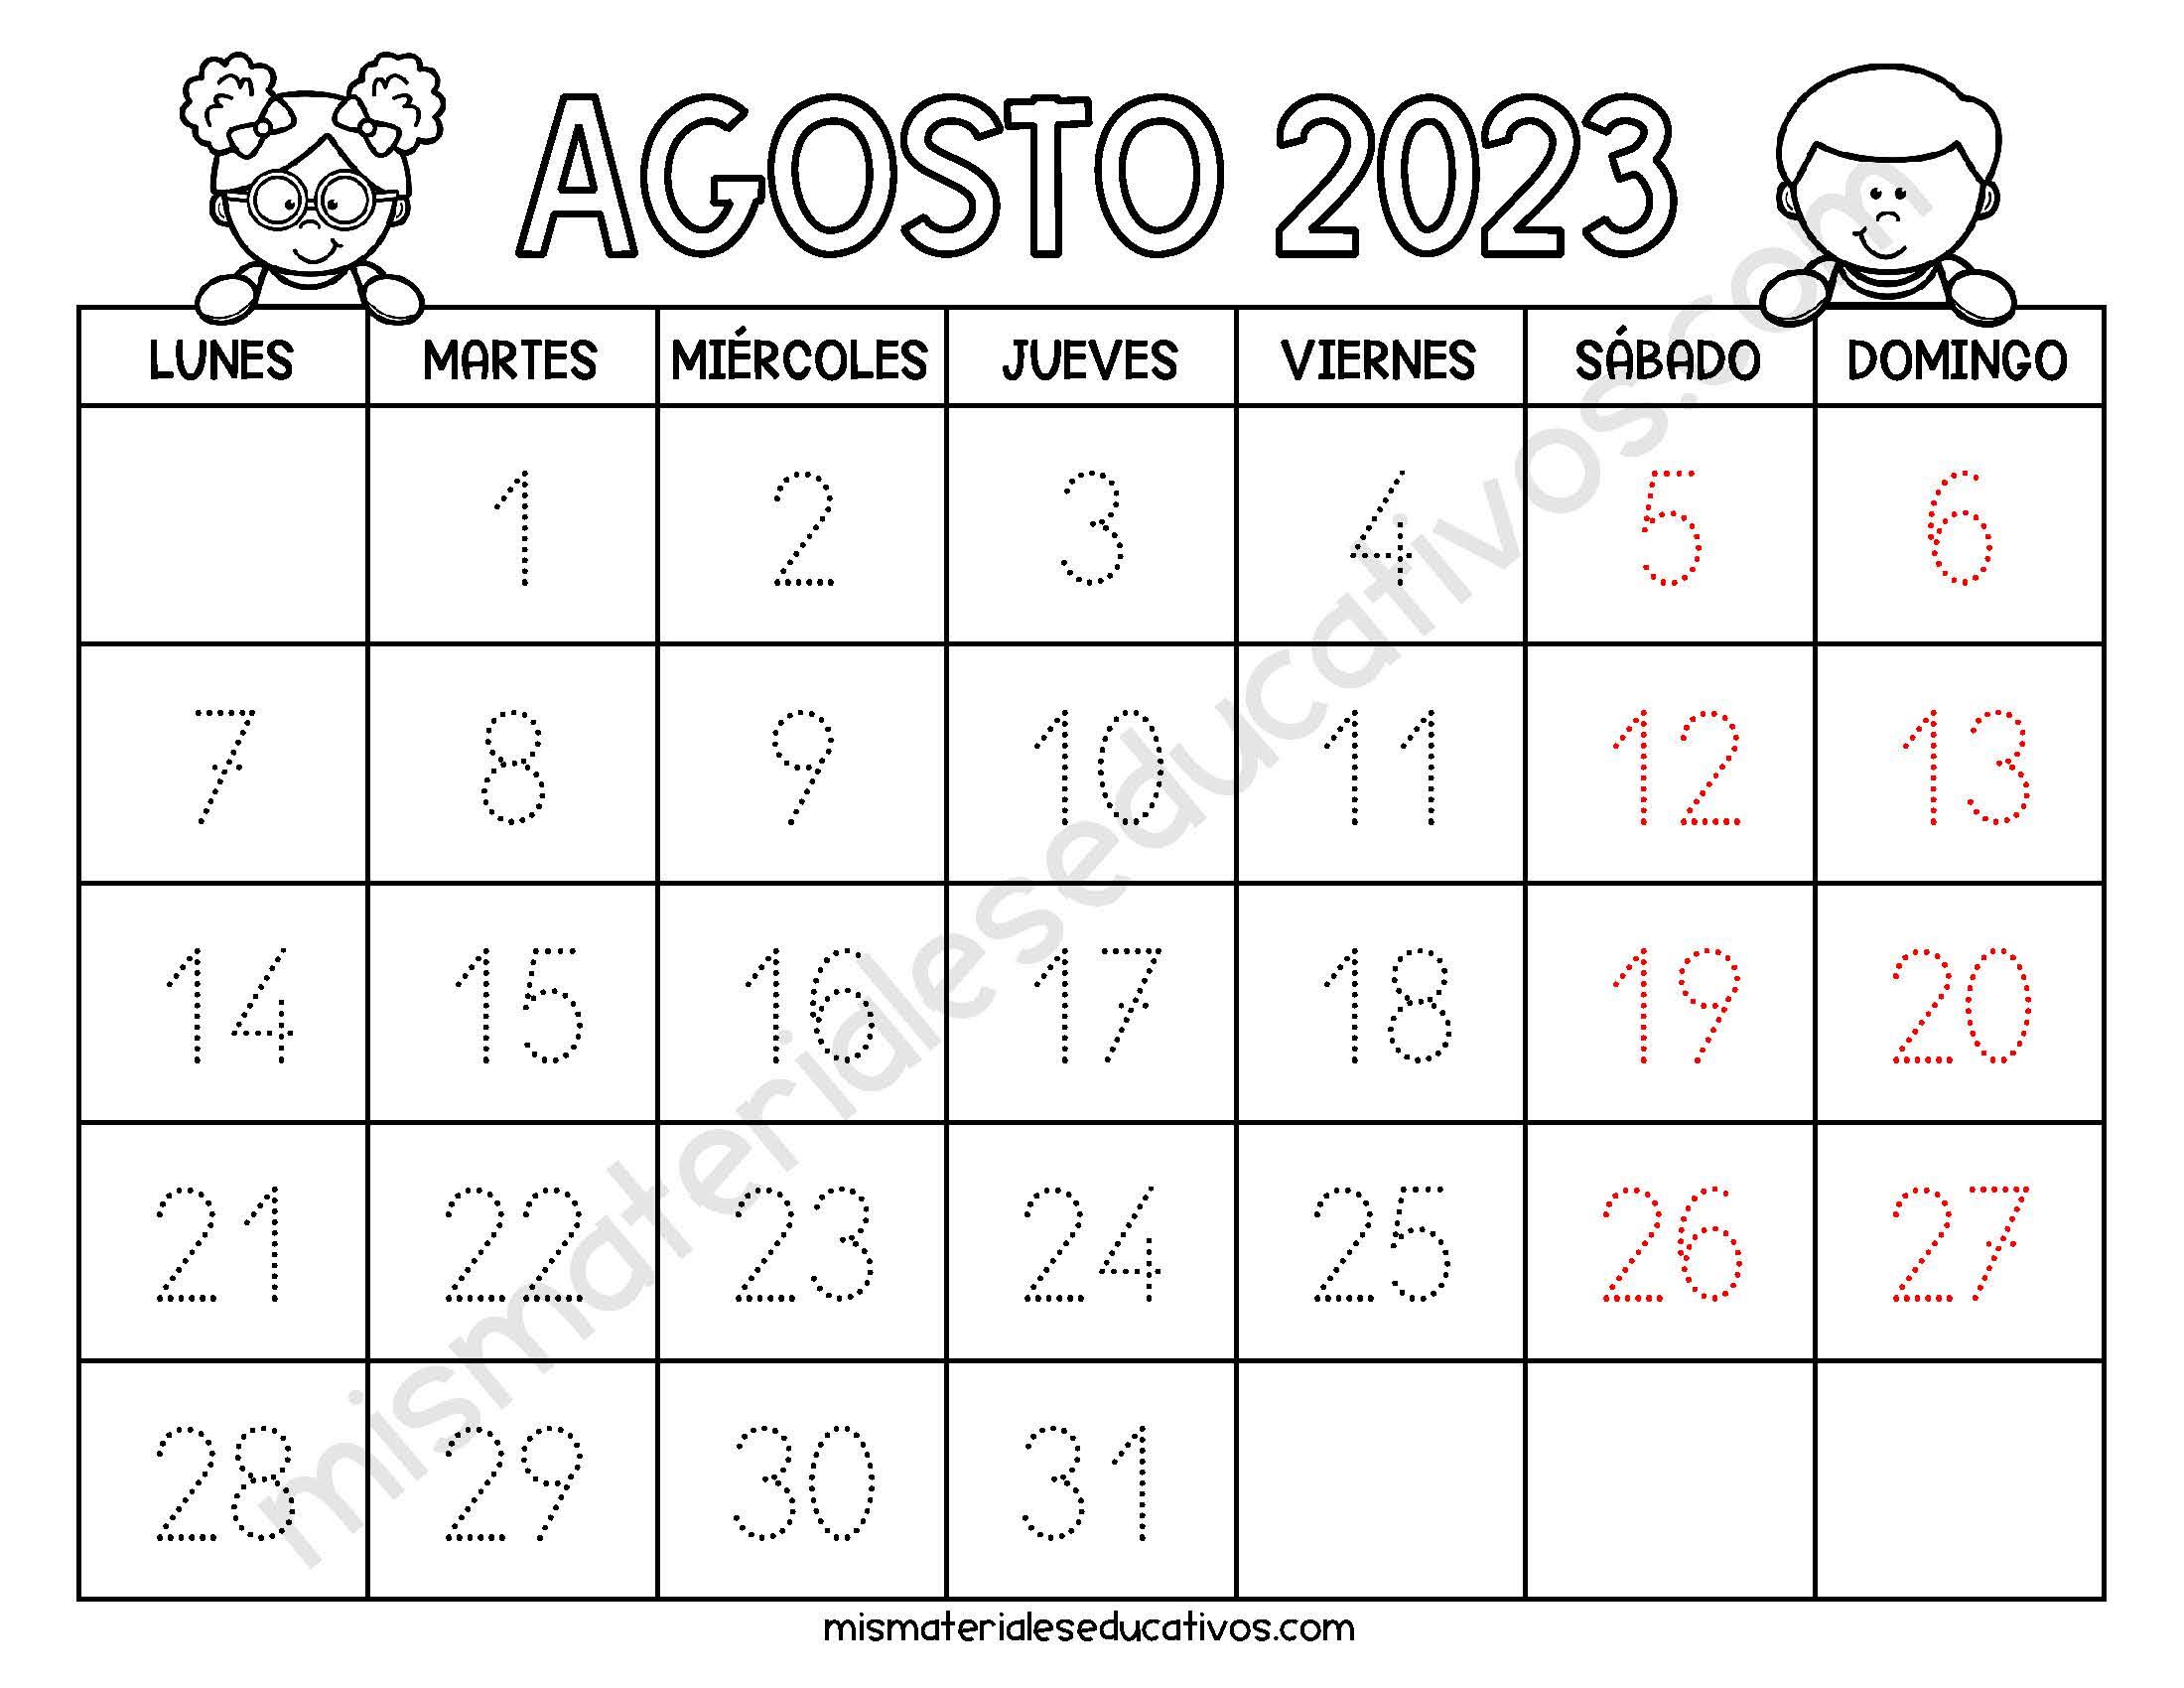 Mis Materiales Educativos Calendario Para Imprimir Para Niños 2022